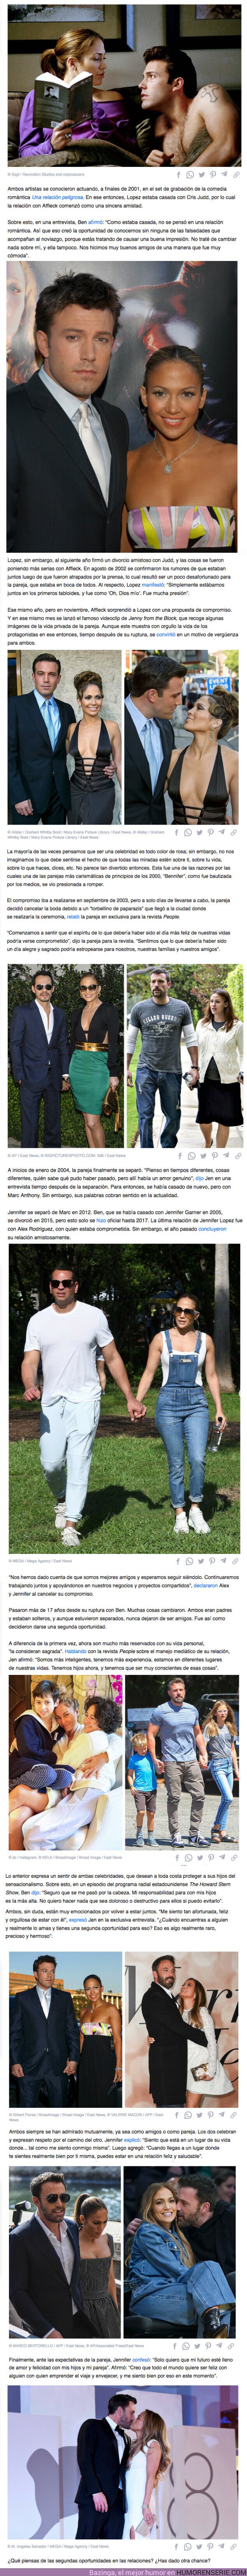 94081 - GALERÍA: Te contamos los secretos de la mágica historia de amor entre Jennifer Lopez y Ben Affleck que renació 20 años después